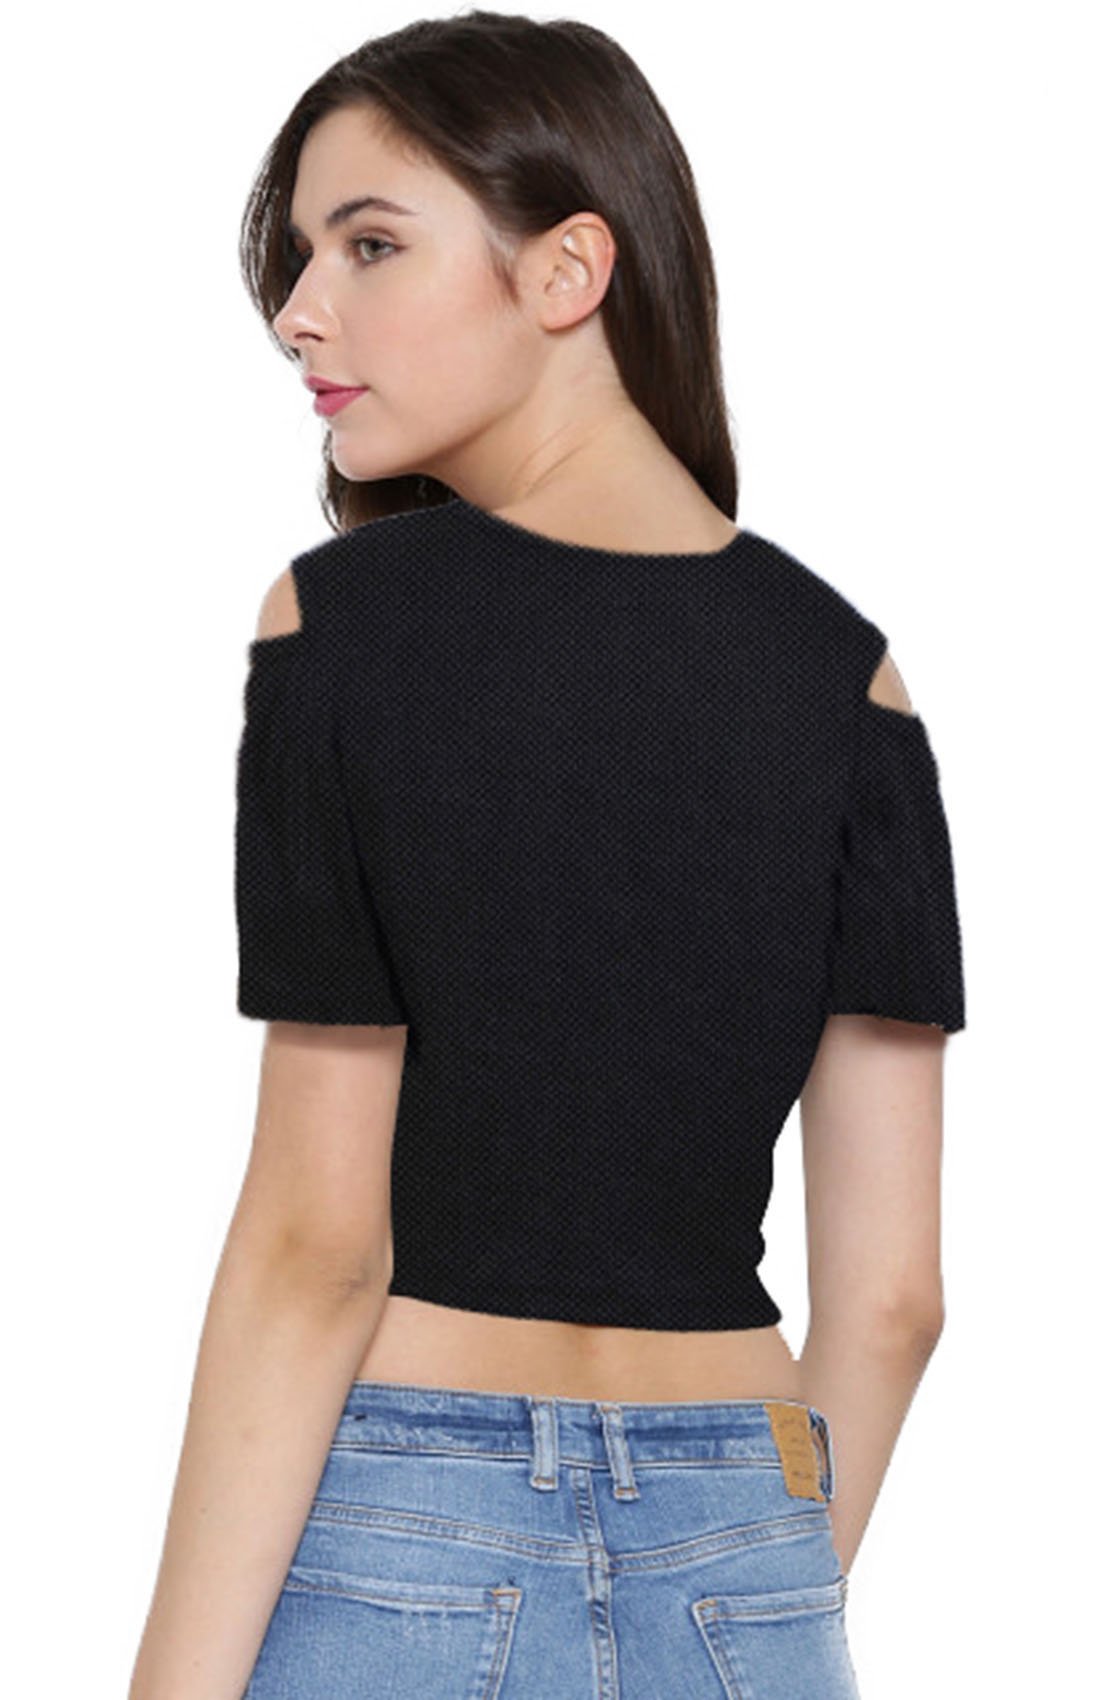 Designer Round Neck Short Sleeve Crop Top for Women -FunkyTeesClub